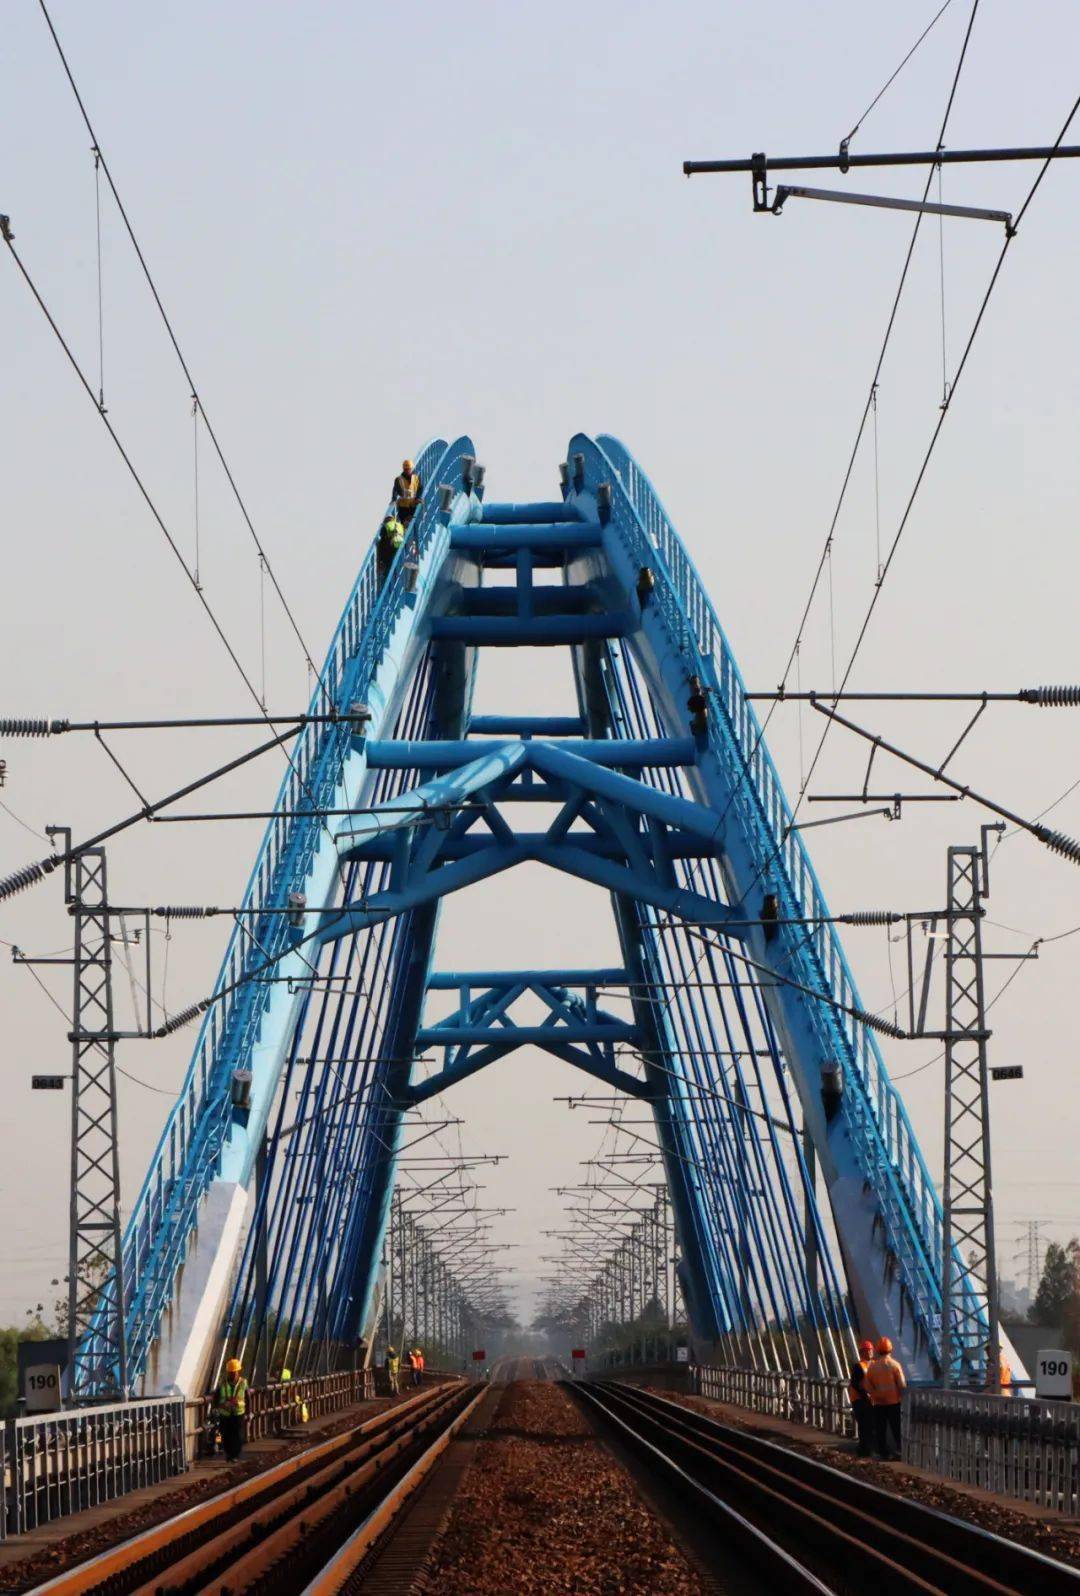 宣杭铁路东苕溪特大桥位于杭州市余杭区与湖州市德清县交界处,全长